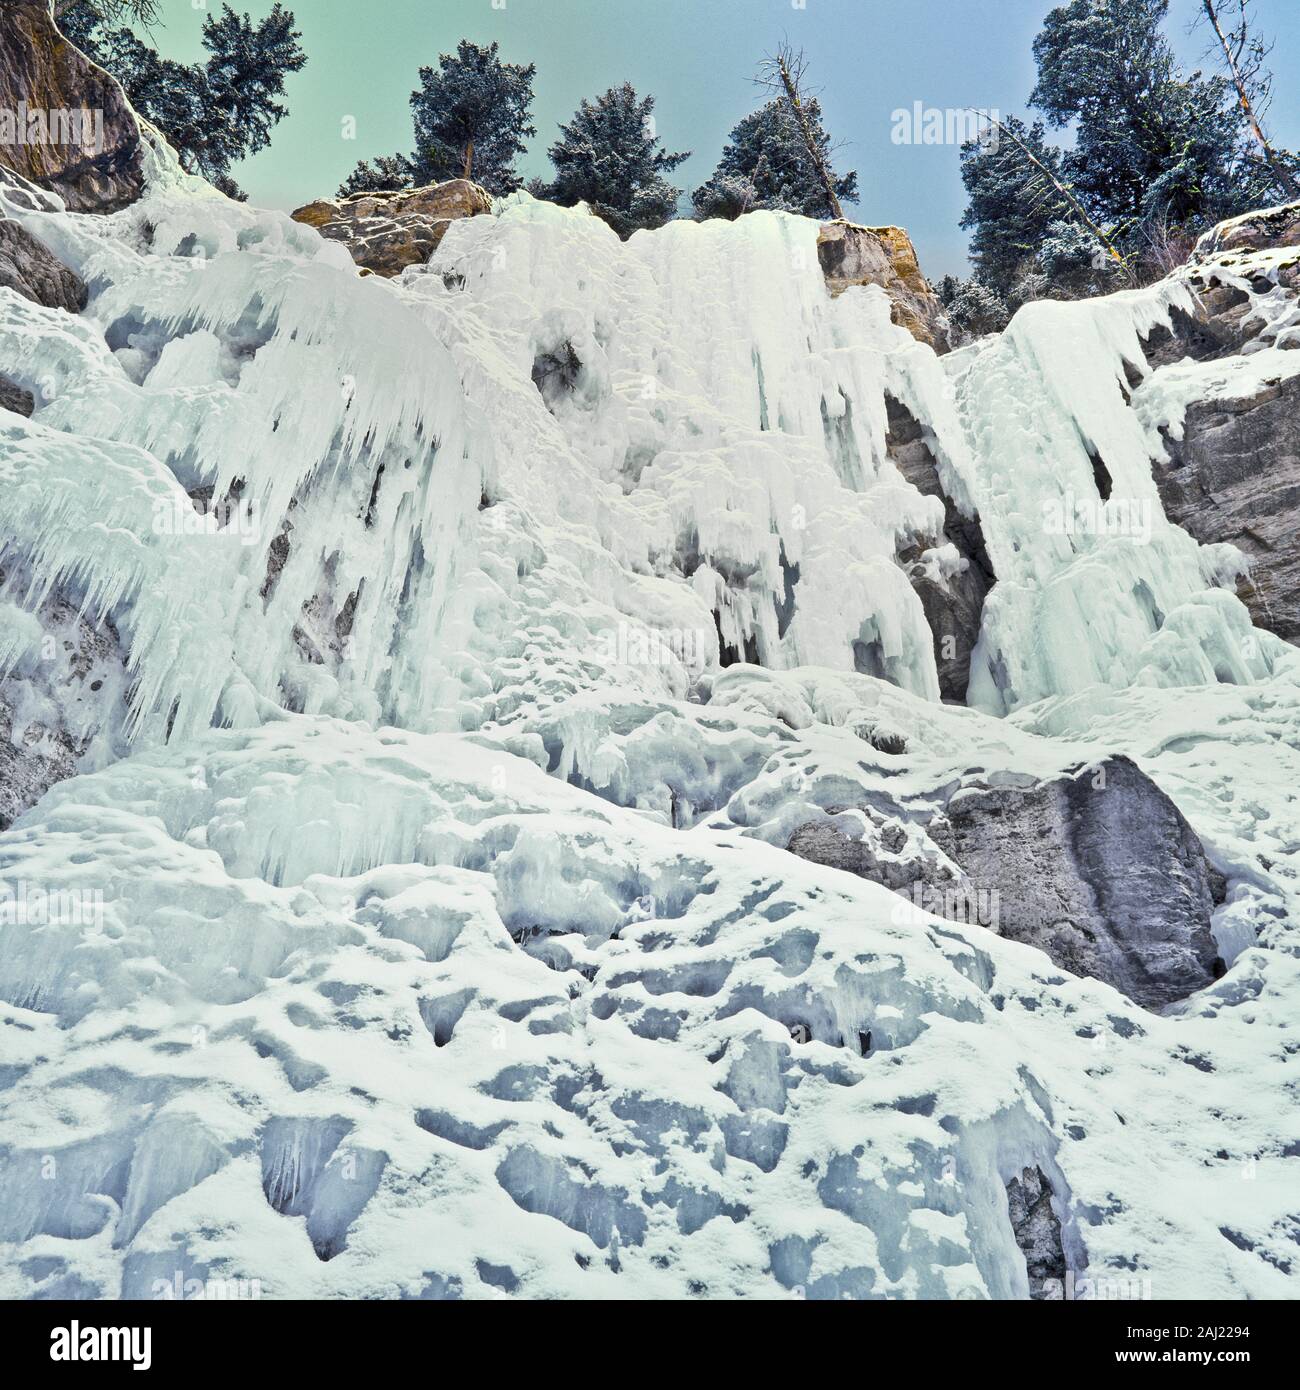 frozen cataract falls in the elk creek basin near augusta, montana Stock Photo